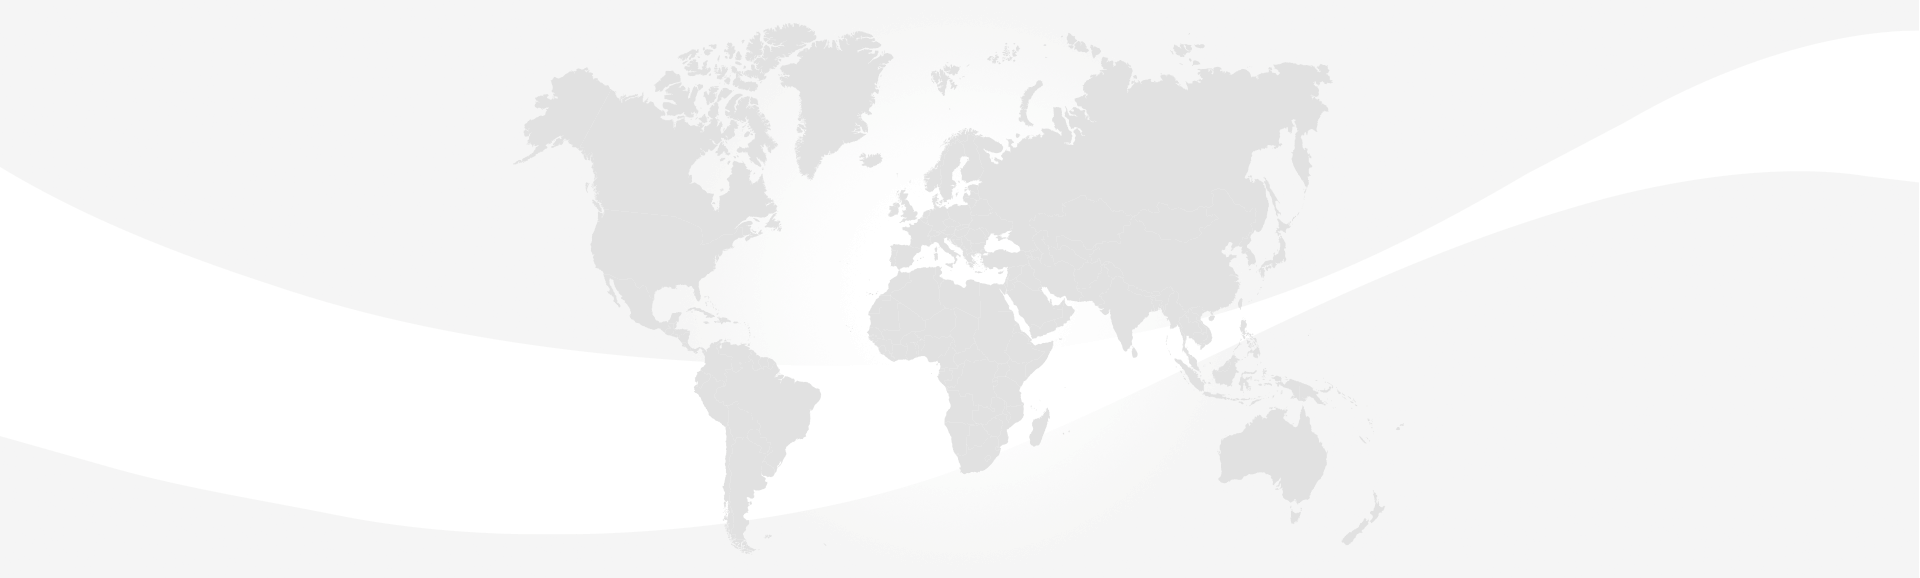 slika mape sveta